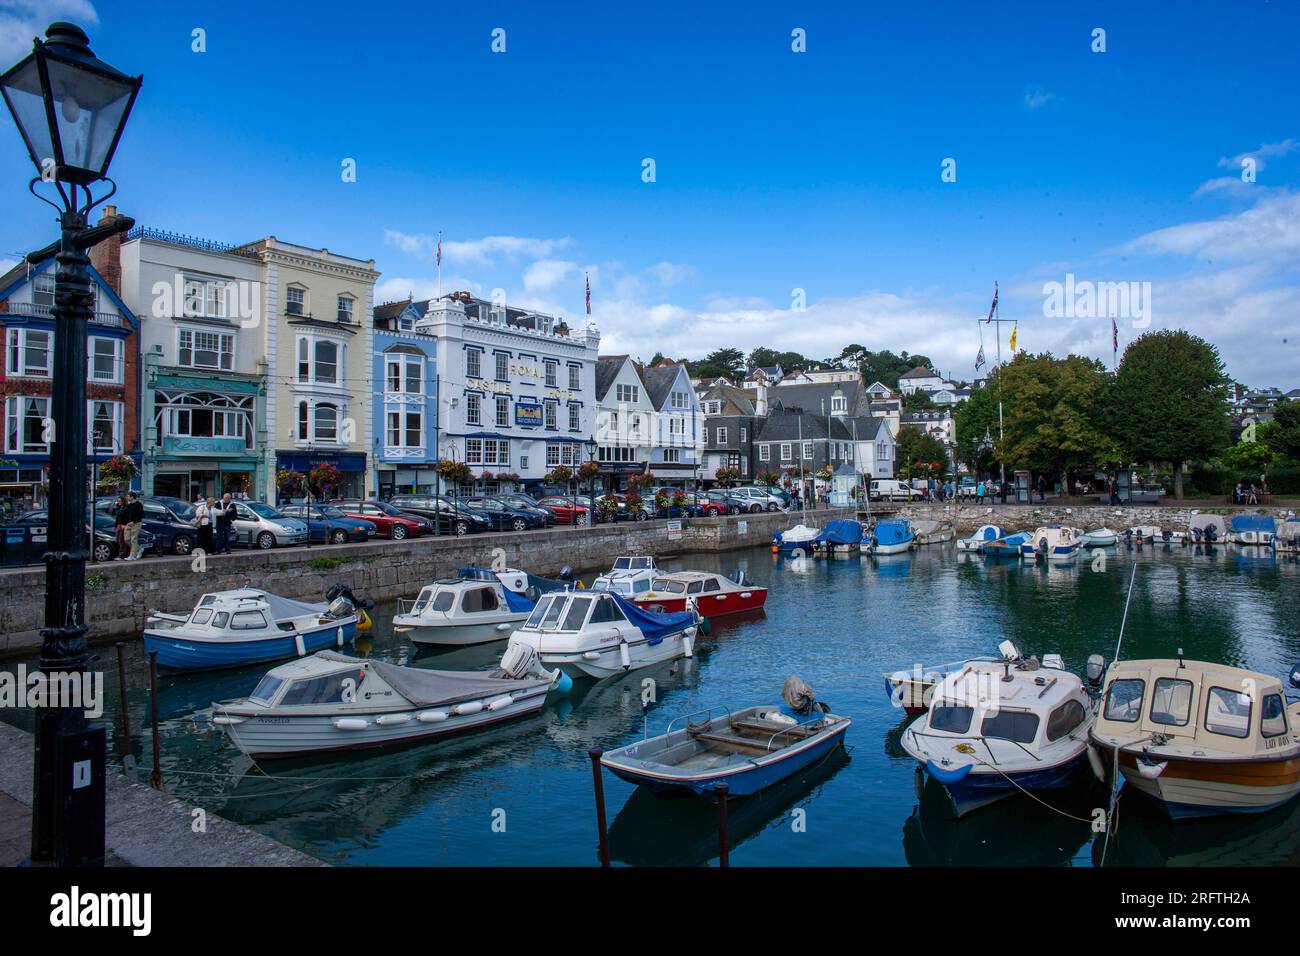 Bootsanlegestelle am Hafen von Dartmouth, Devon, England - Stockfoto